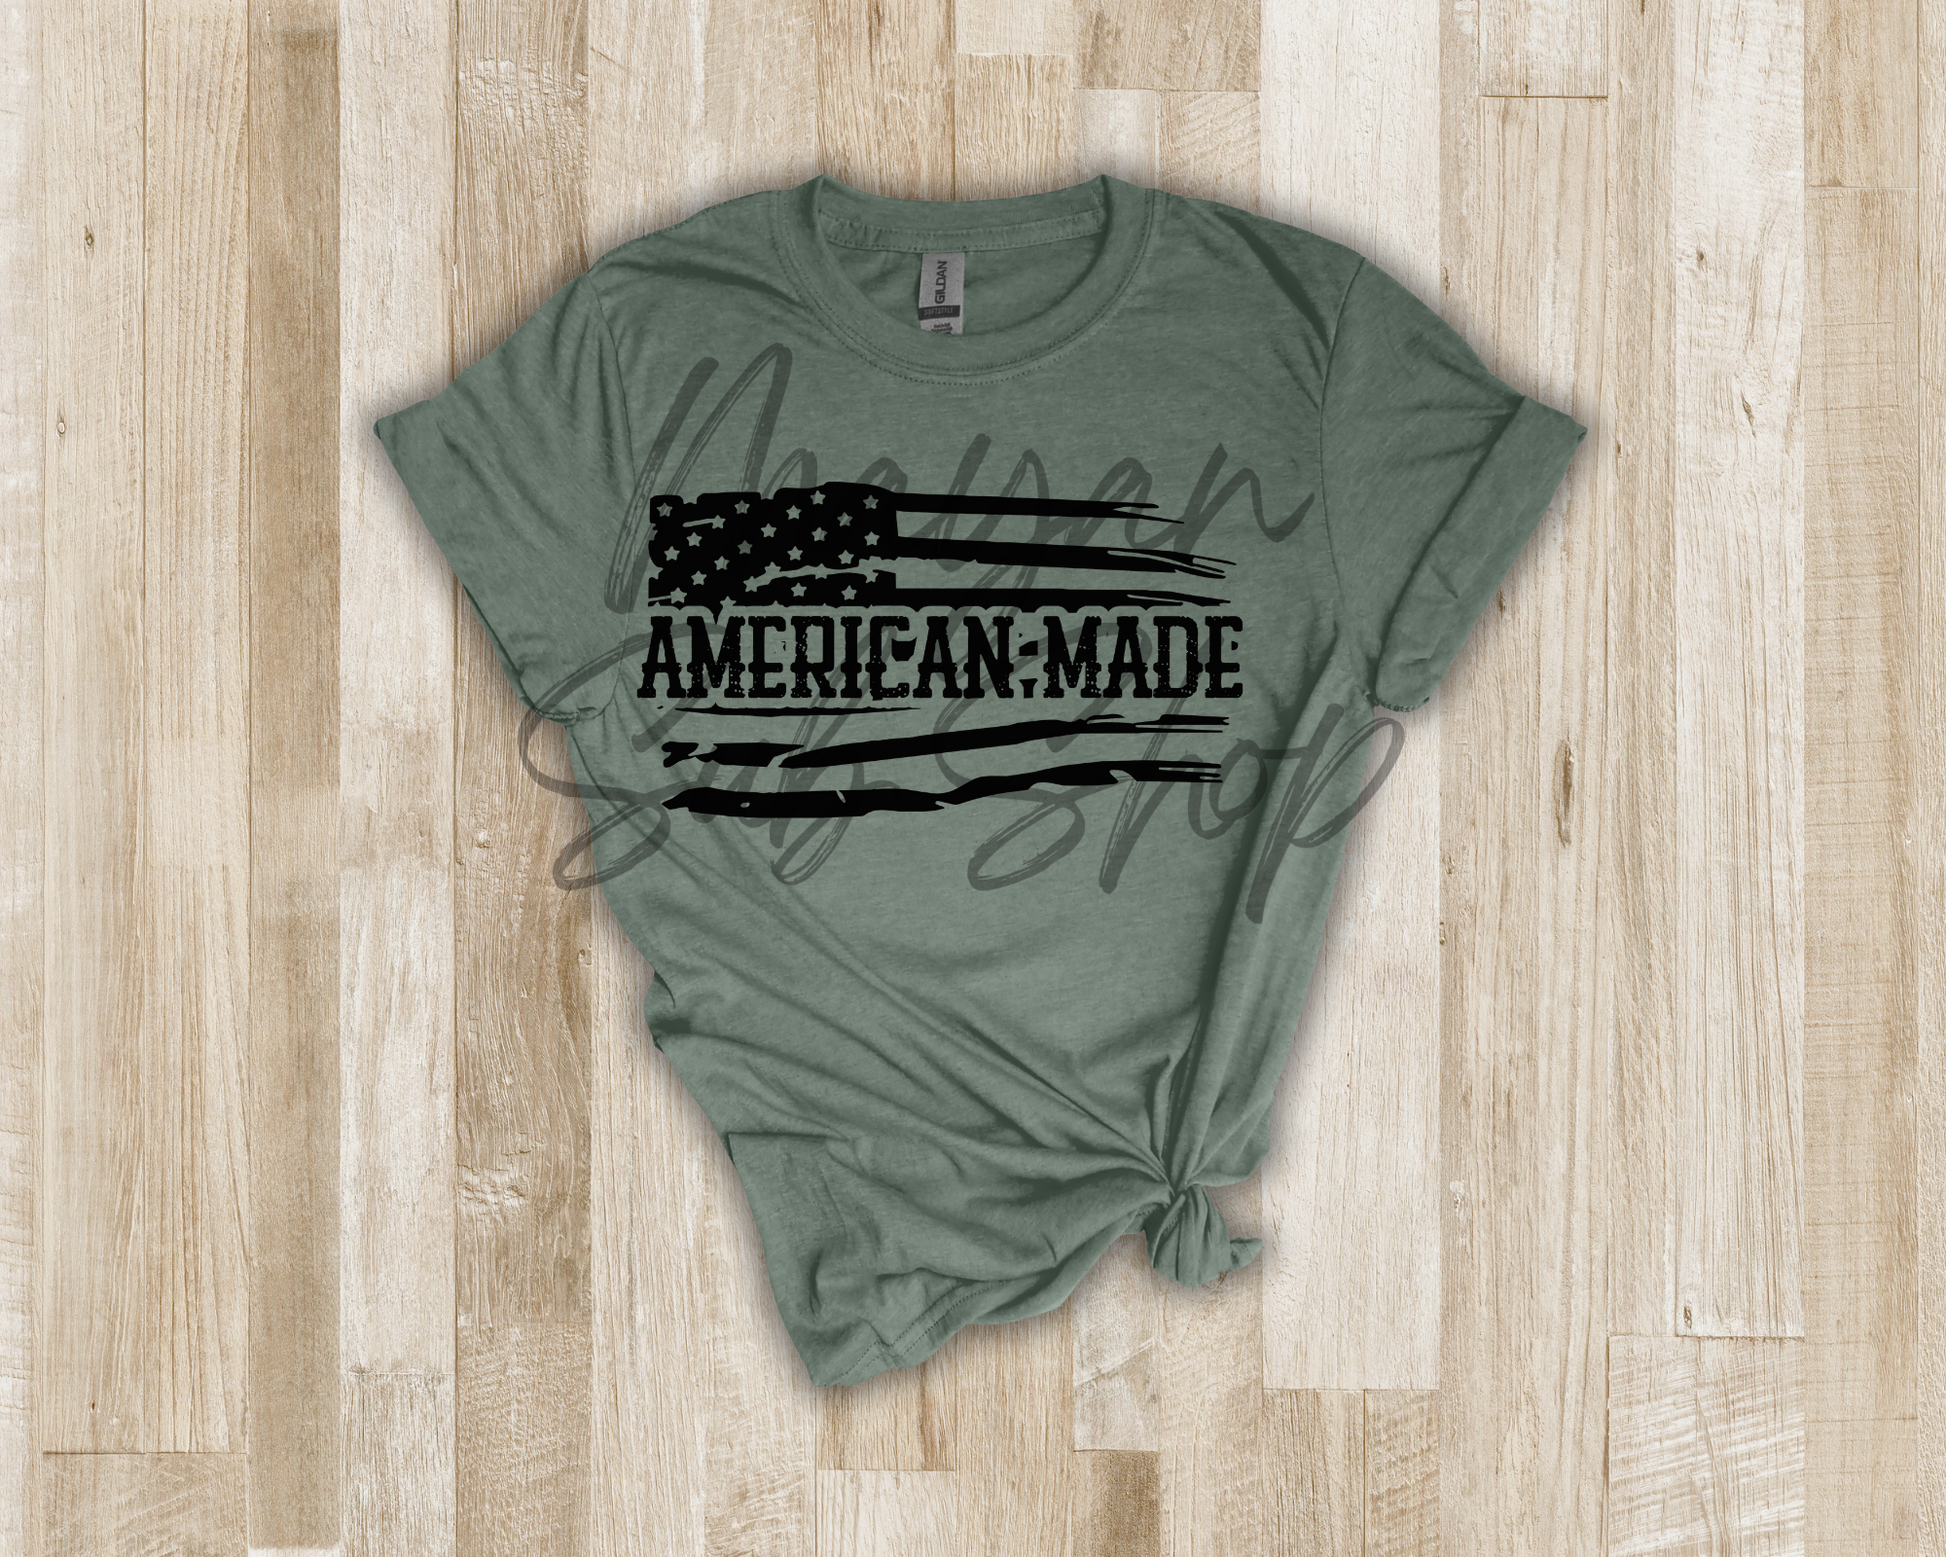 American Made shirt - Mayan Sub Shop